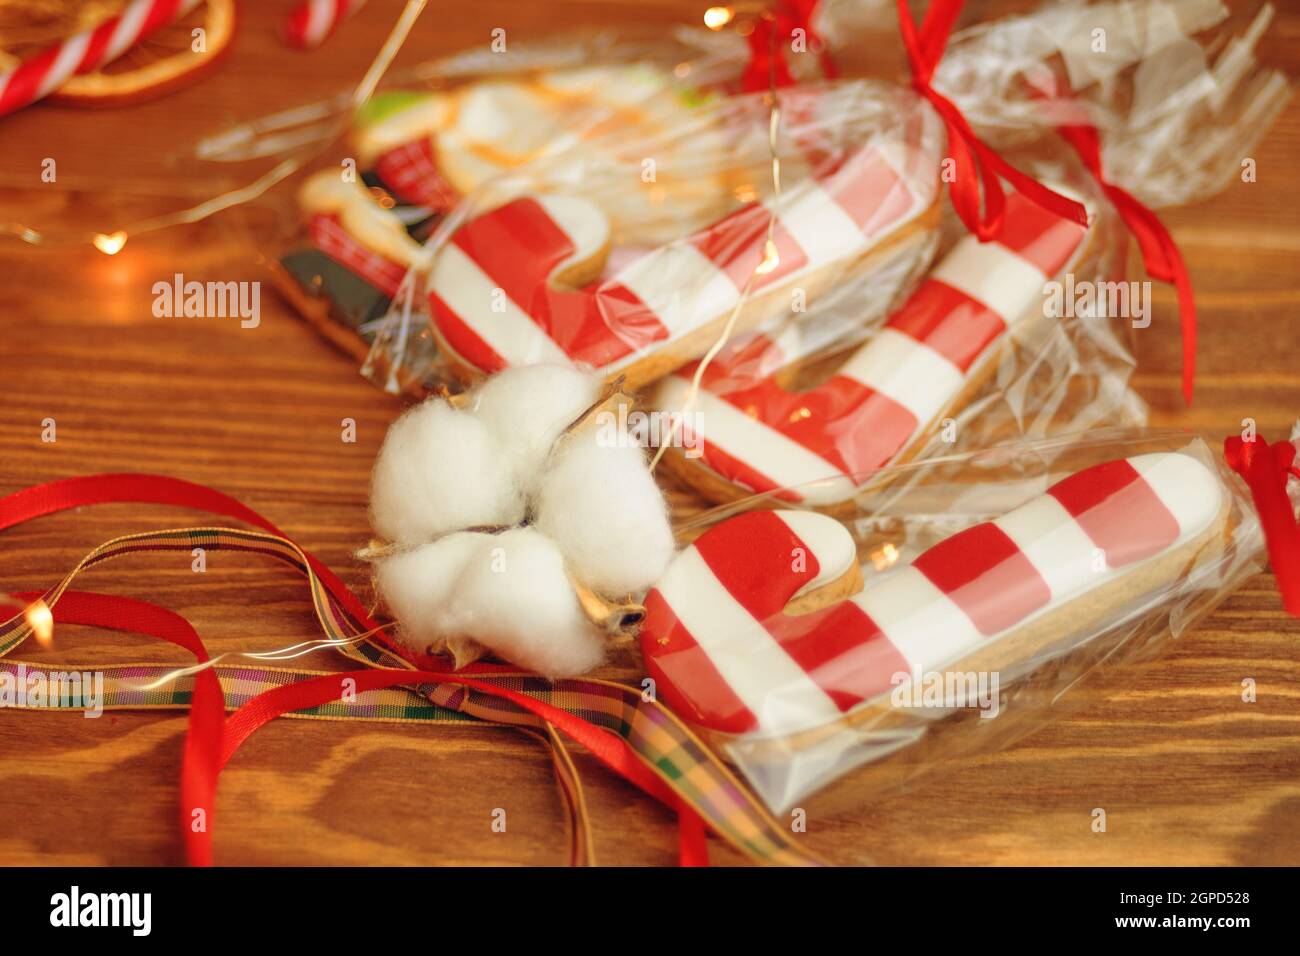 Pan di zenzero in forma di barrette di zucchero su tavola di legno. Biscotti con glassa rossa e bianca a strisce. Dolci natalizi in sacchetti con nastri. Foto Stock